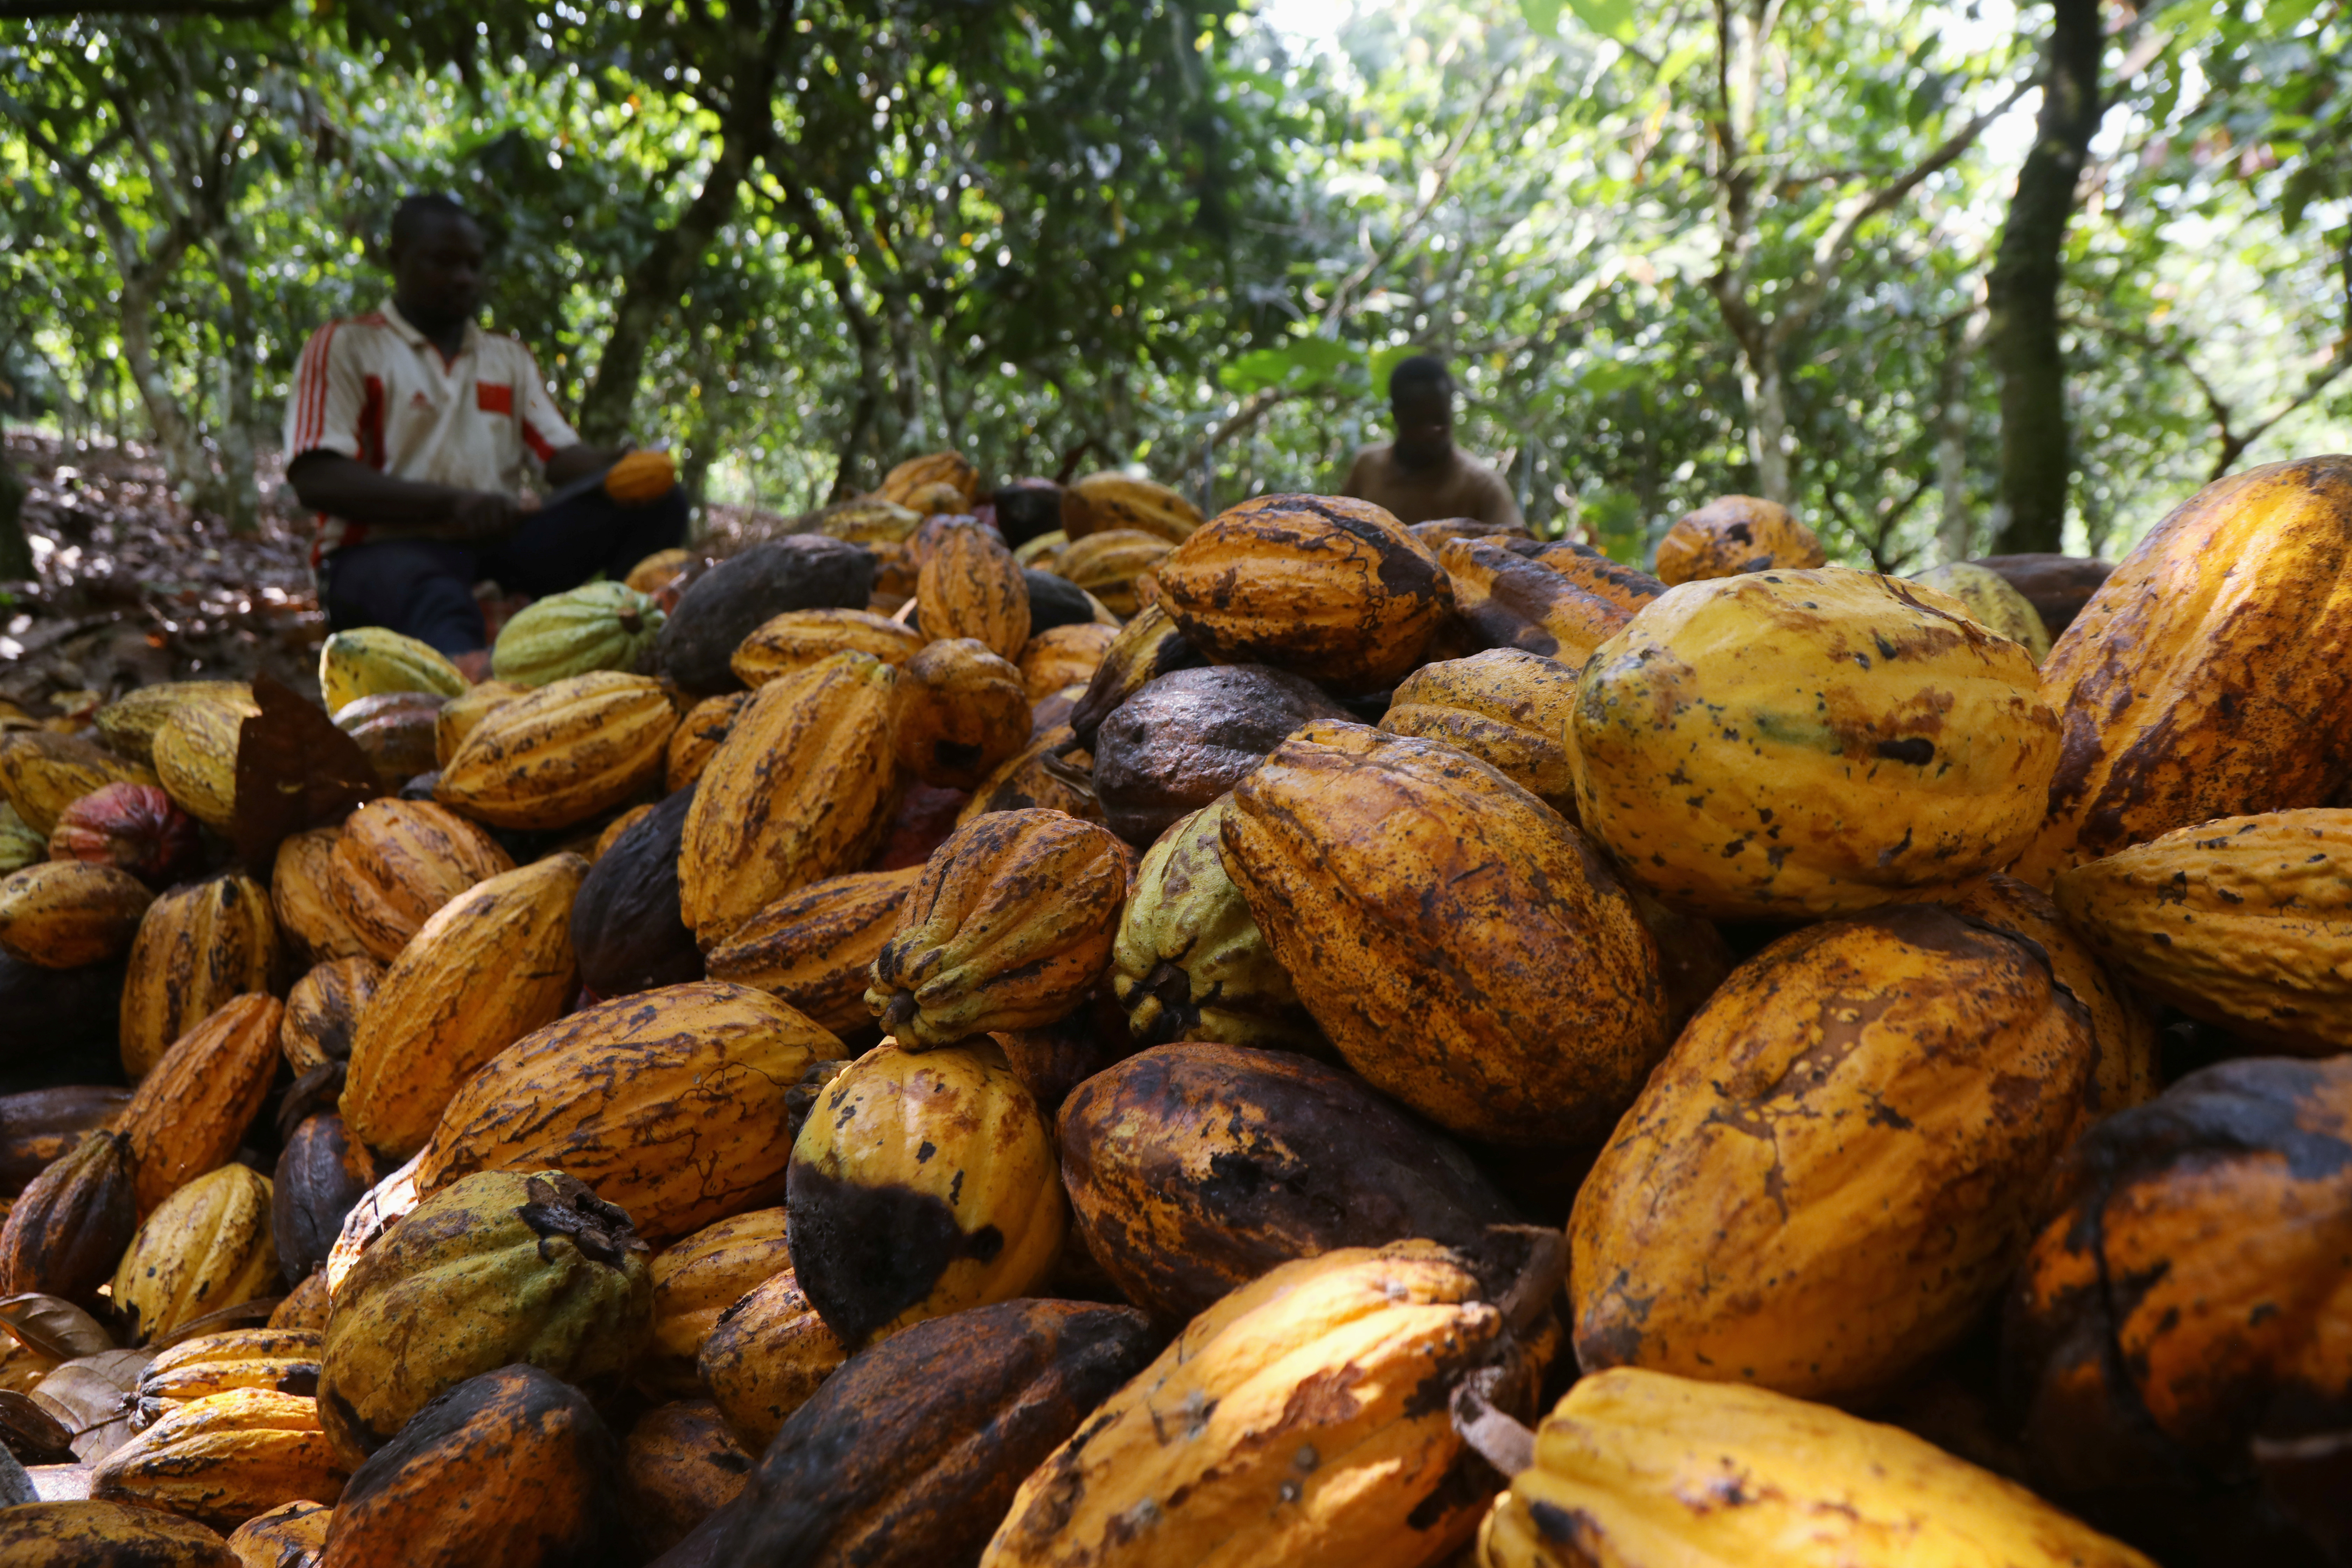 Farmers break cocoa pods at a cocoa farm in Soubre